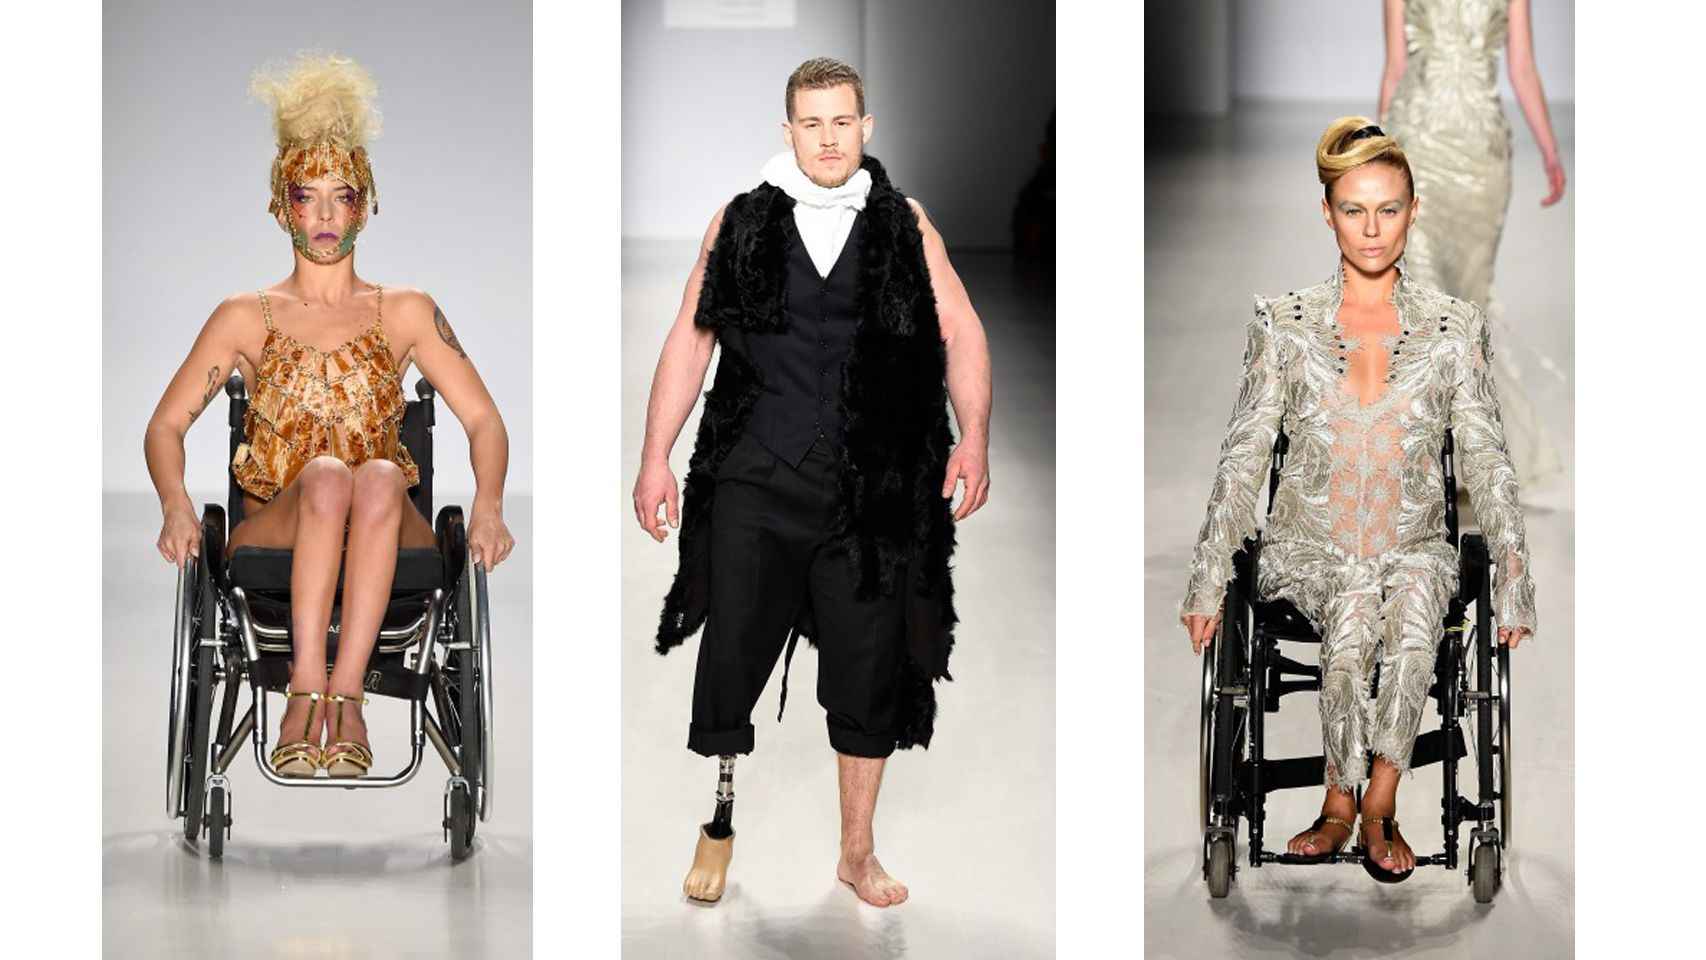 Modelos con discapacidad en la Fashion week de Nueva York en 2015.